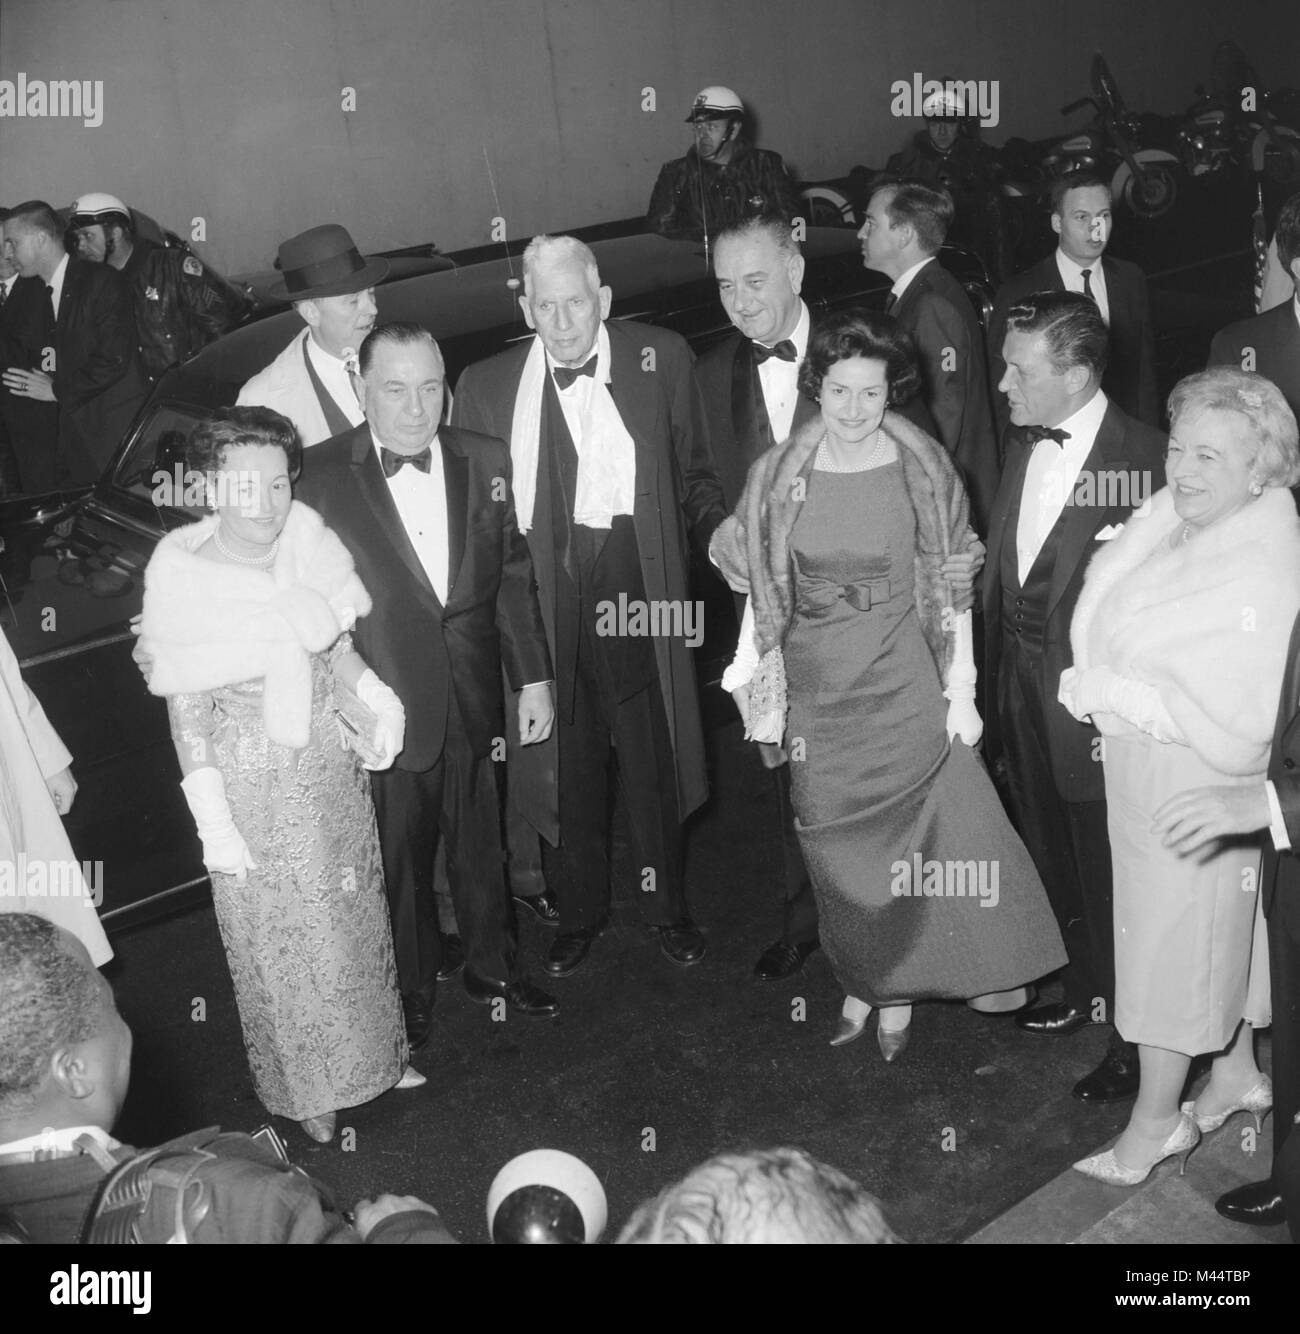 Präsident Lyndon Johnson und Lady Bird ankommen bei einer Veranstaltung in Chicago, Ca. 1964. Stockfoto